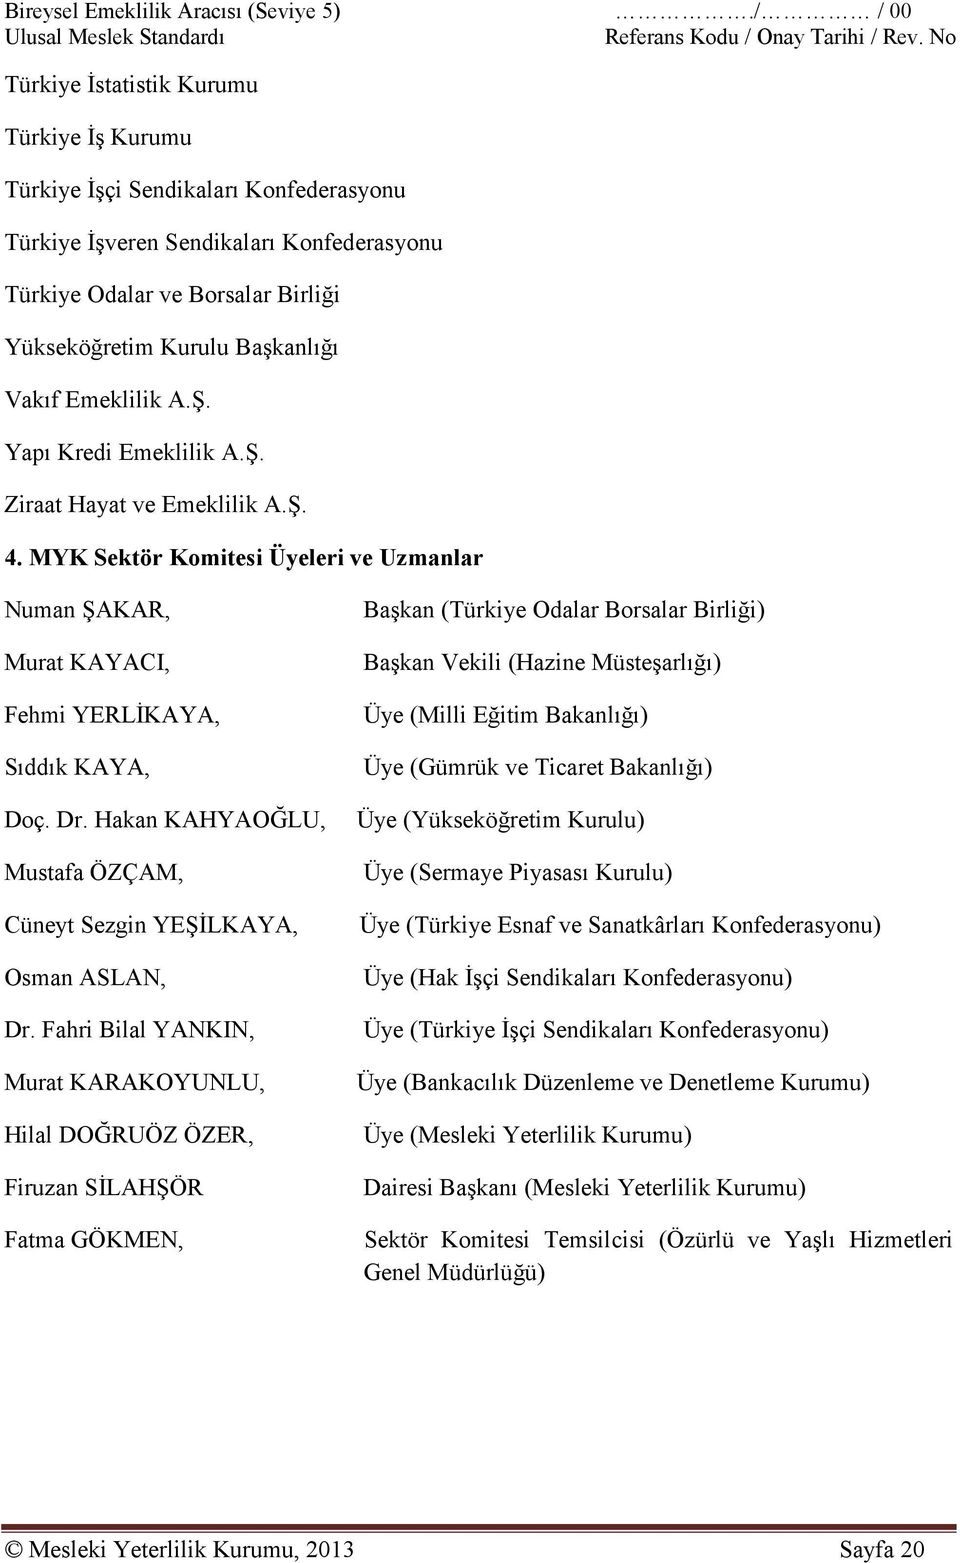 Hakan KAHYAOĞLU, Mustafa ÖZÇAM, Cüneyt Sezgin YEŞİLKAYA, Osman ASLAN, Dr.